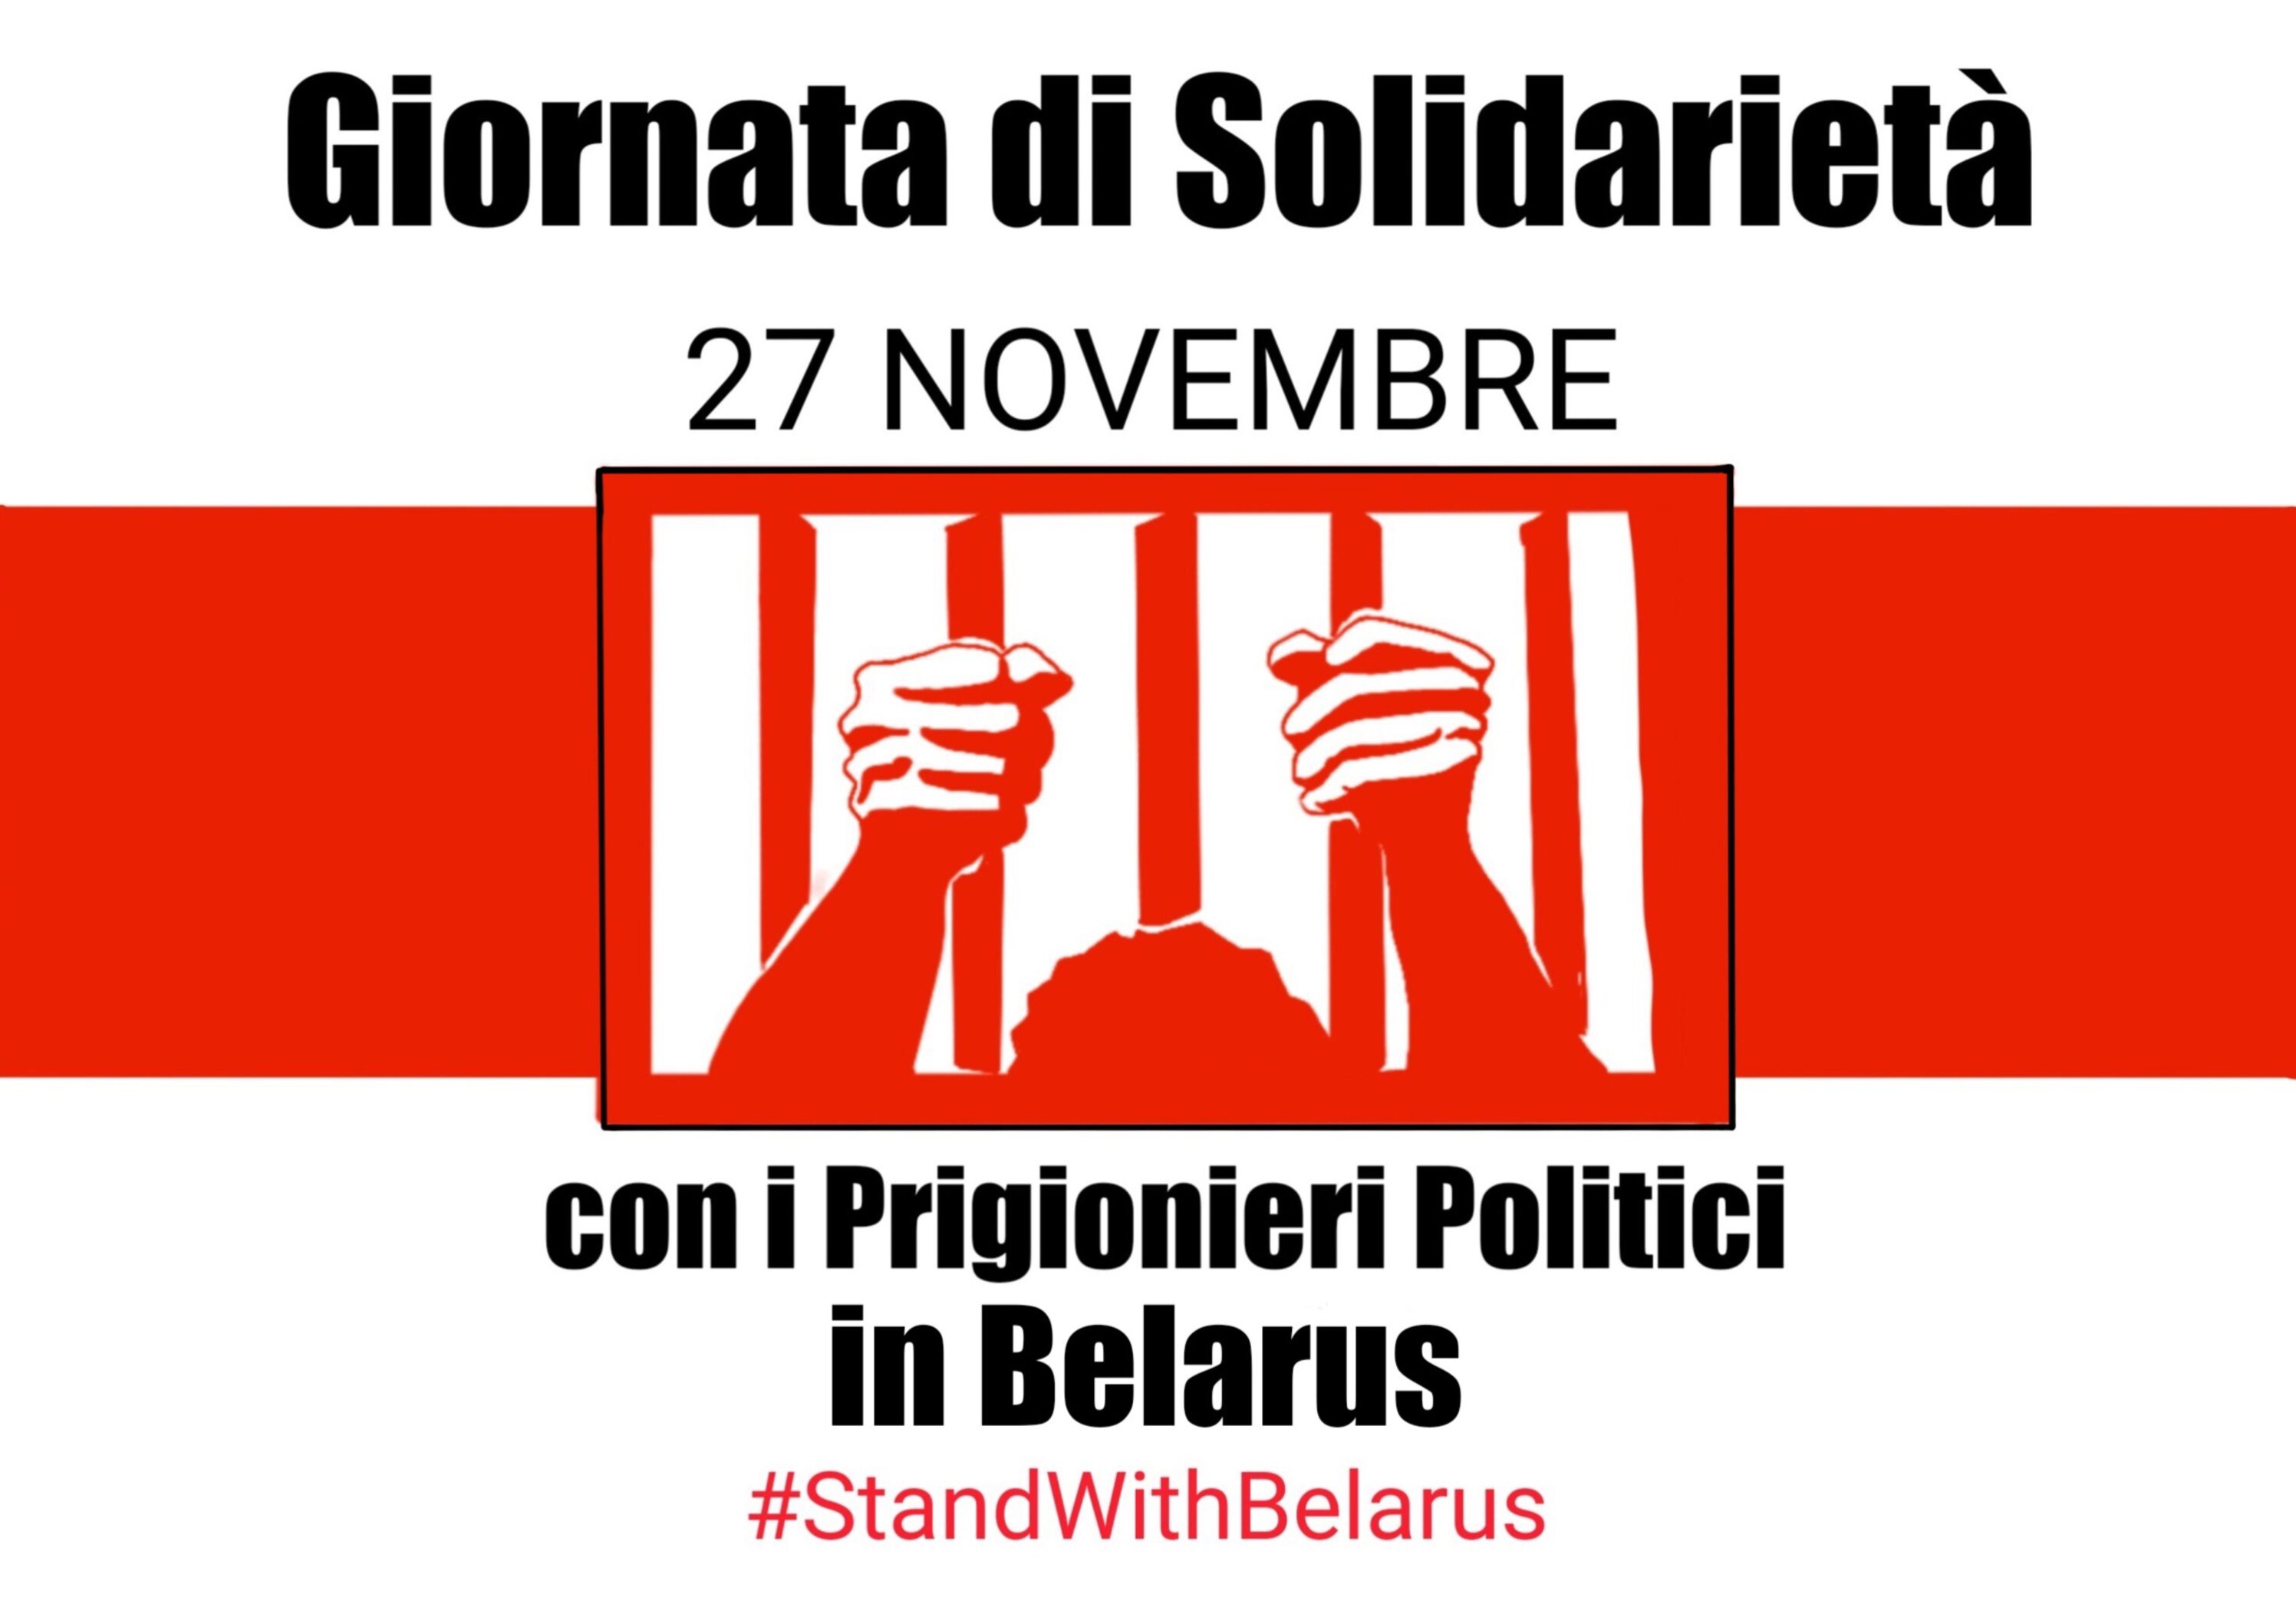 27 novembre giornata di solidarietà alla Bielorussia